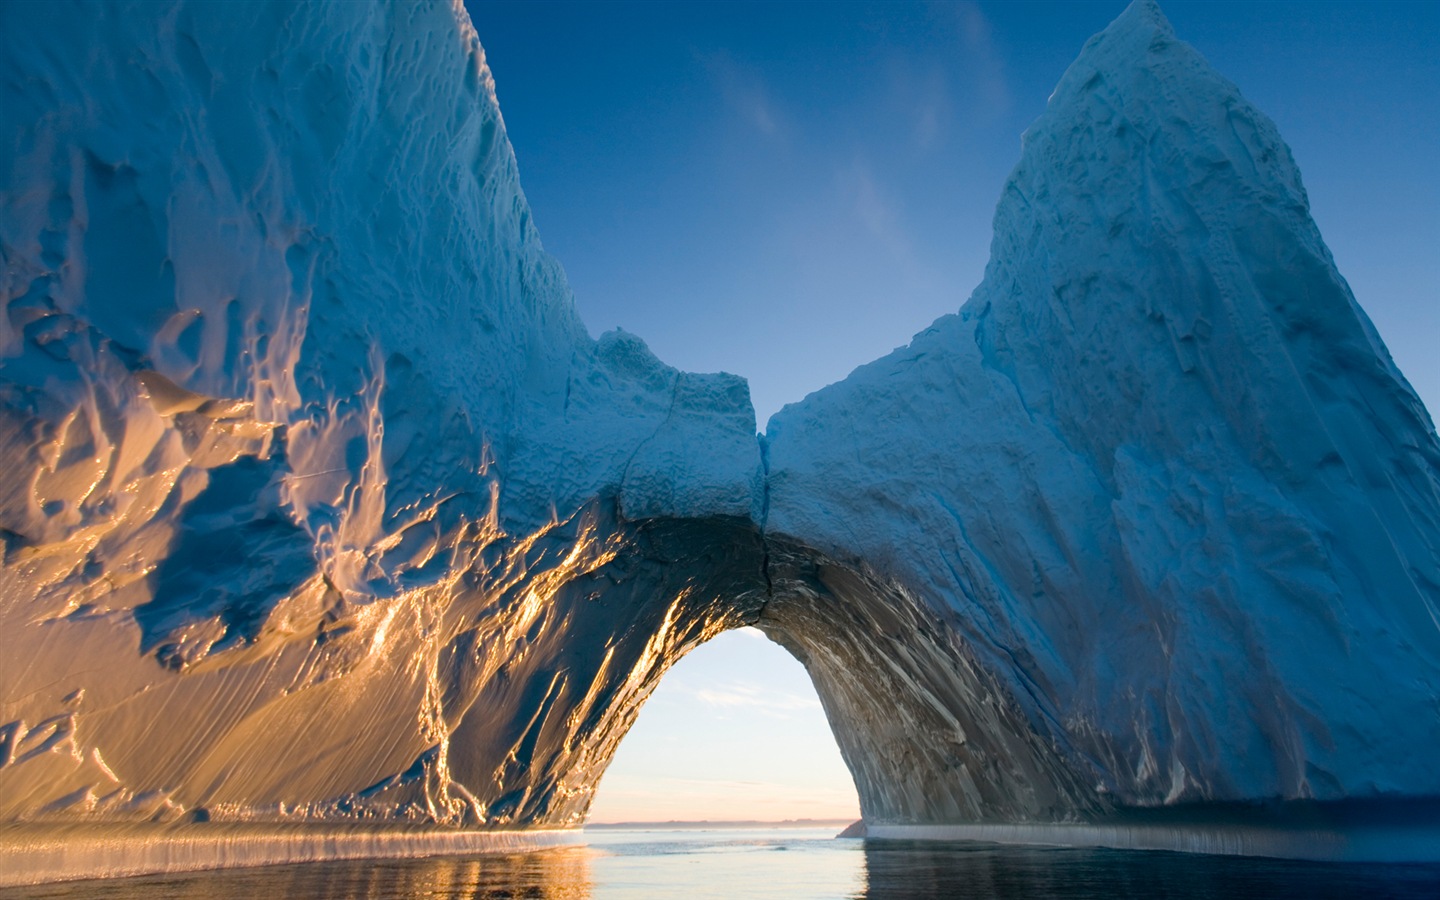 Windows 8: Fondos del Ártico, el paisaje ecológico, ártico animales #3 - 1440x900